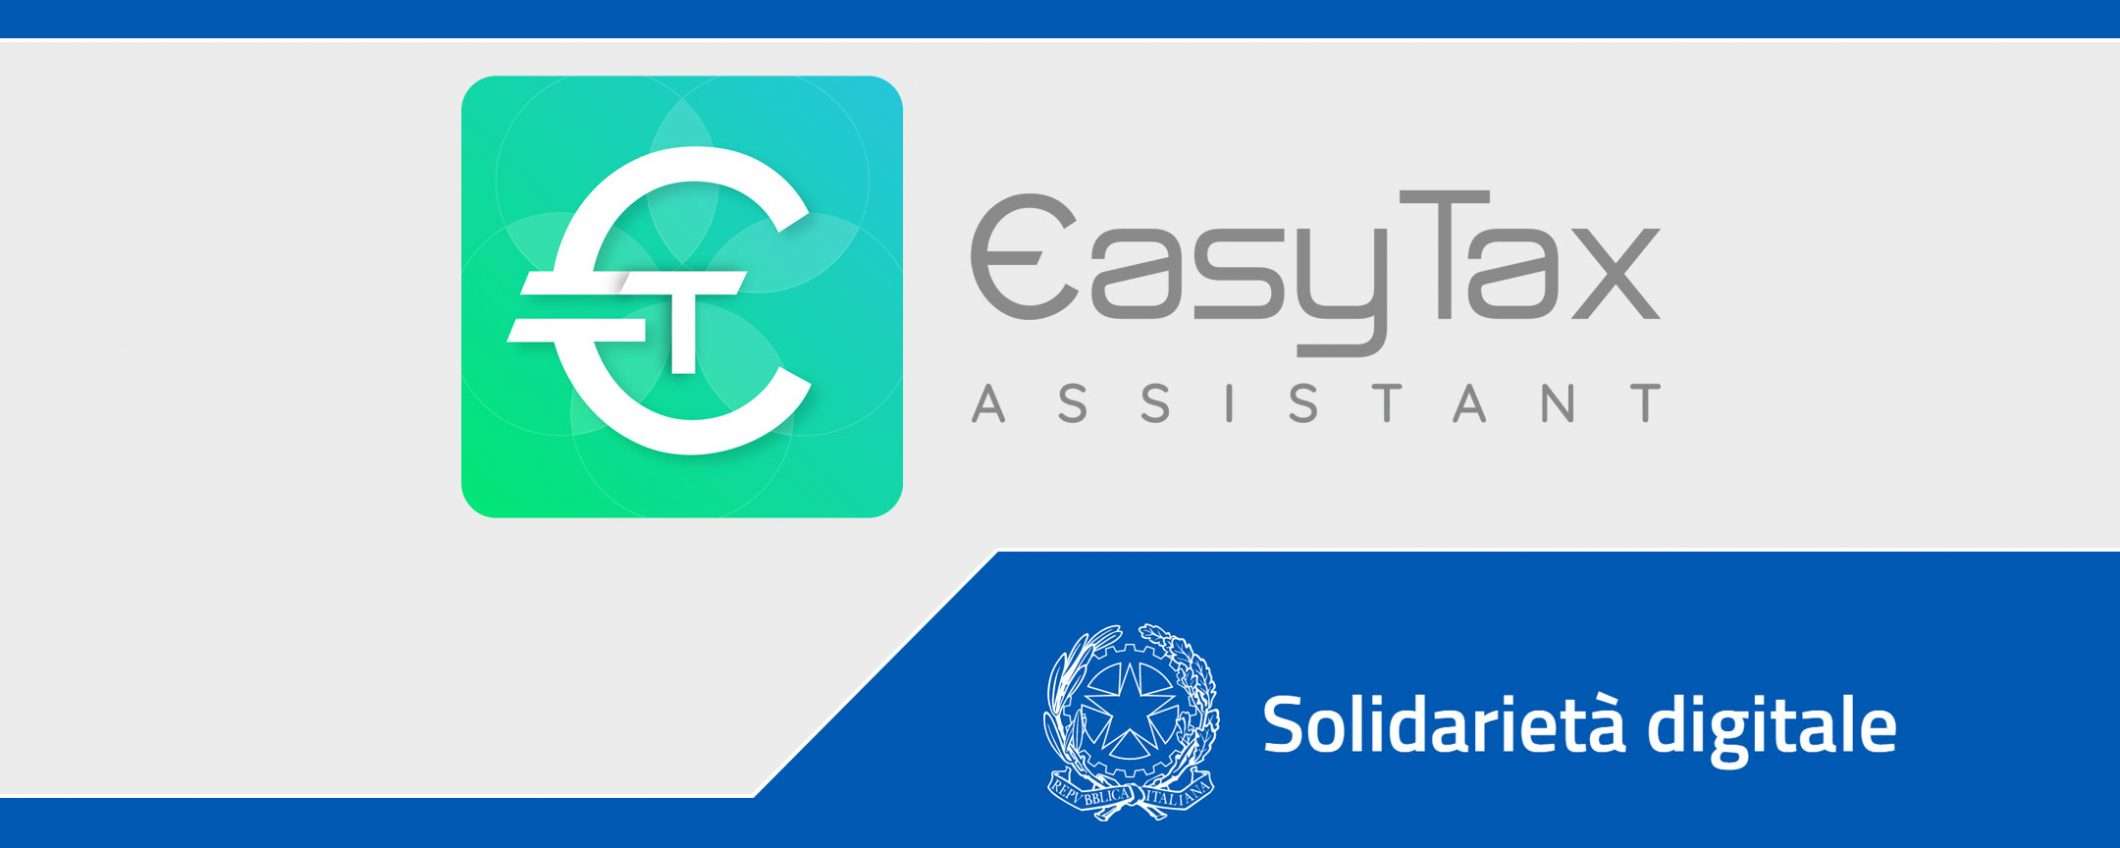 Solidarietà Digitale: EasyTax per la fiscalità